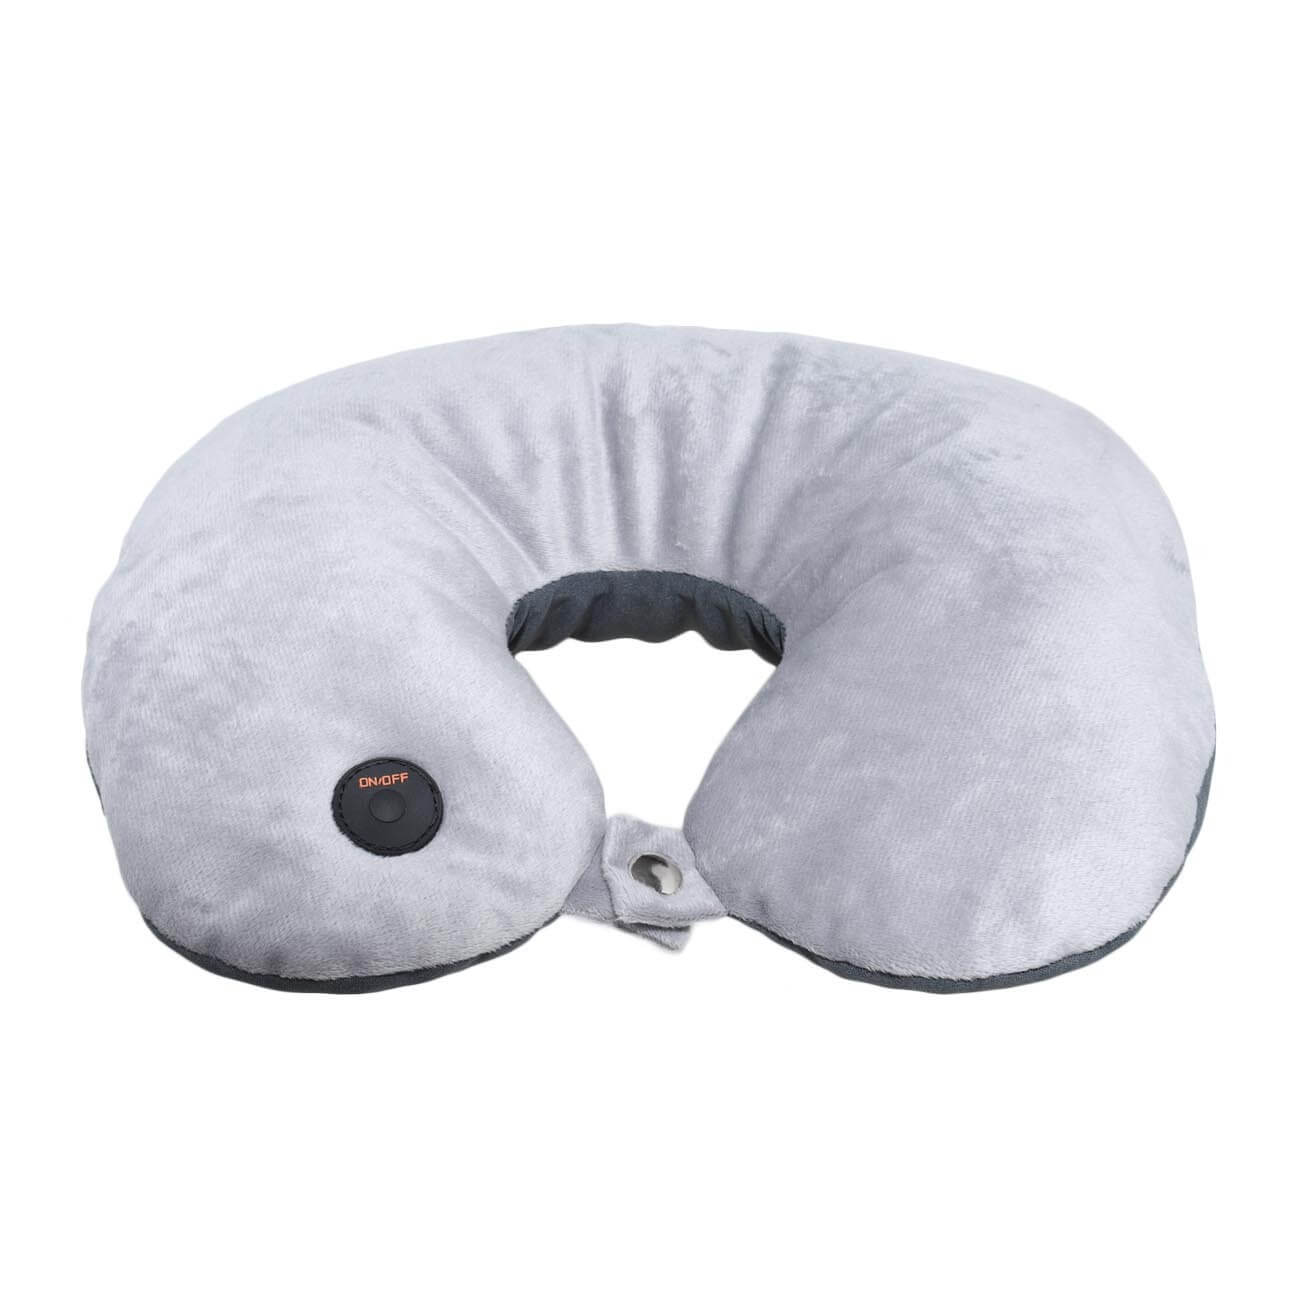 Подушка для путешествия, с вибрационным массажем, 2 в 1, полиэстер, серая, Relax изображение № 1